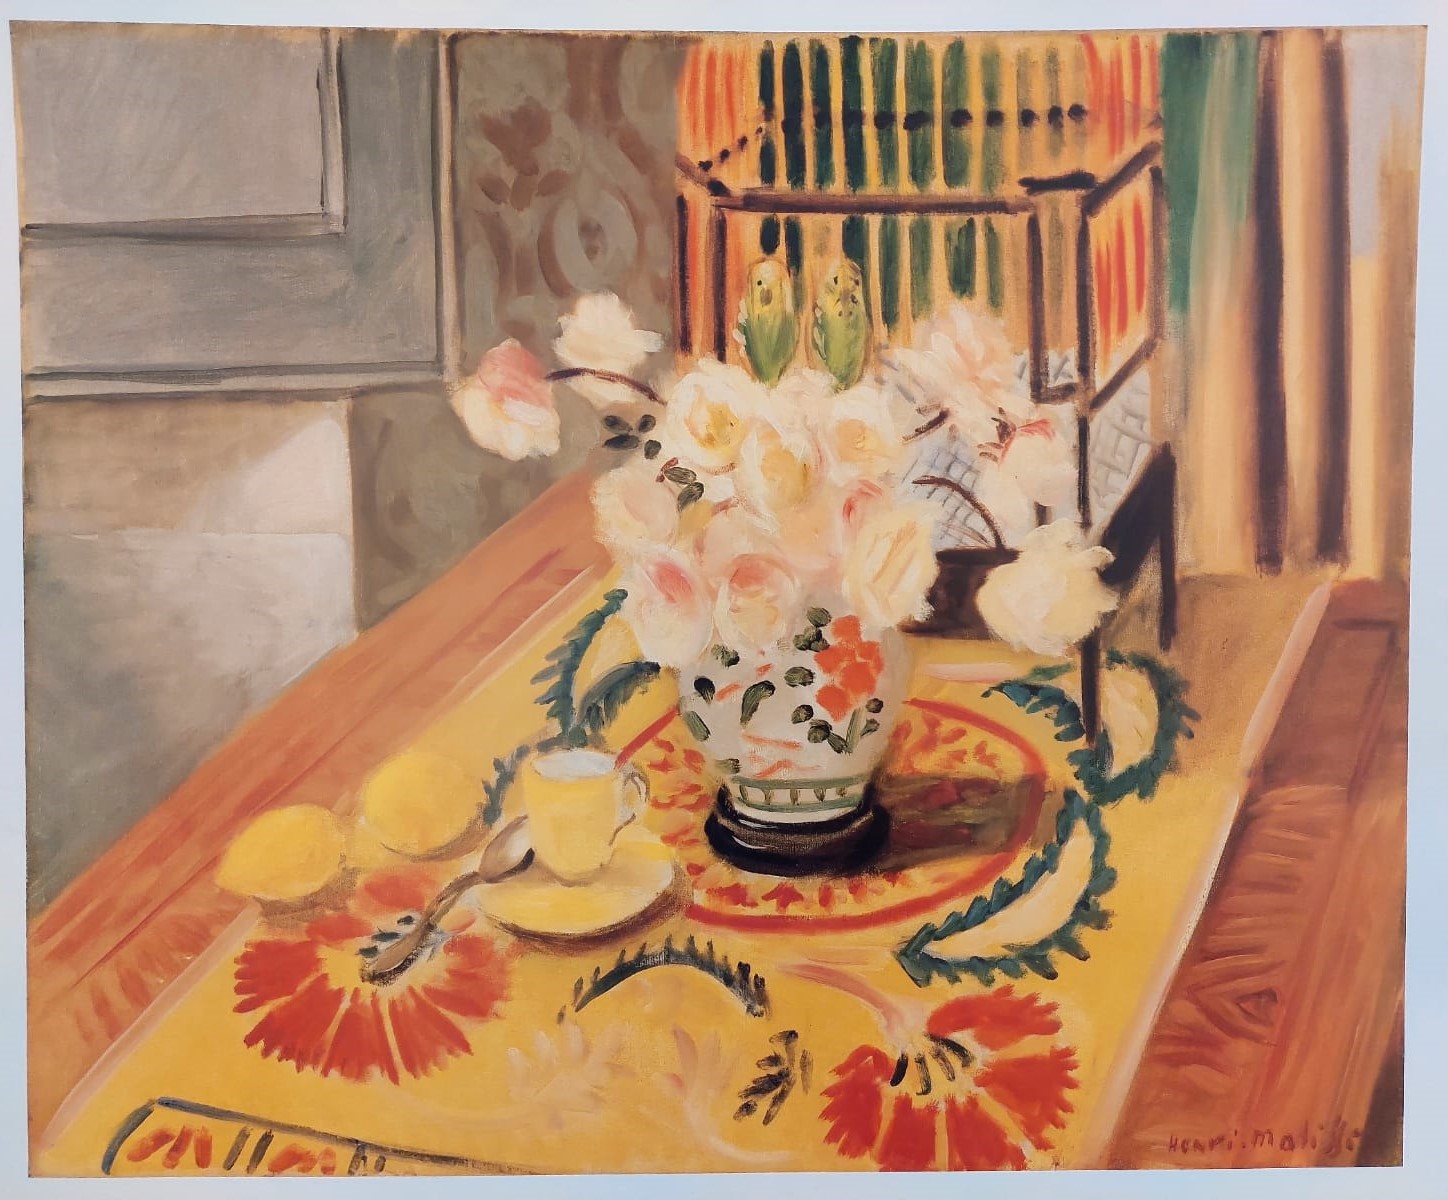 אנרי מאטיס henri matisse כד ורדים על השולחן הדפס יפהפה צבעוני